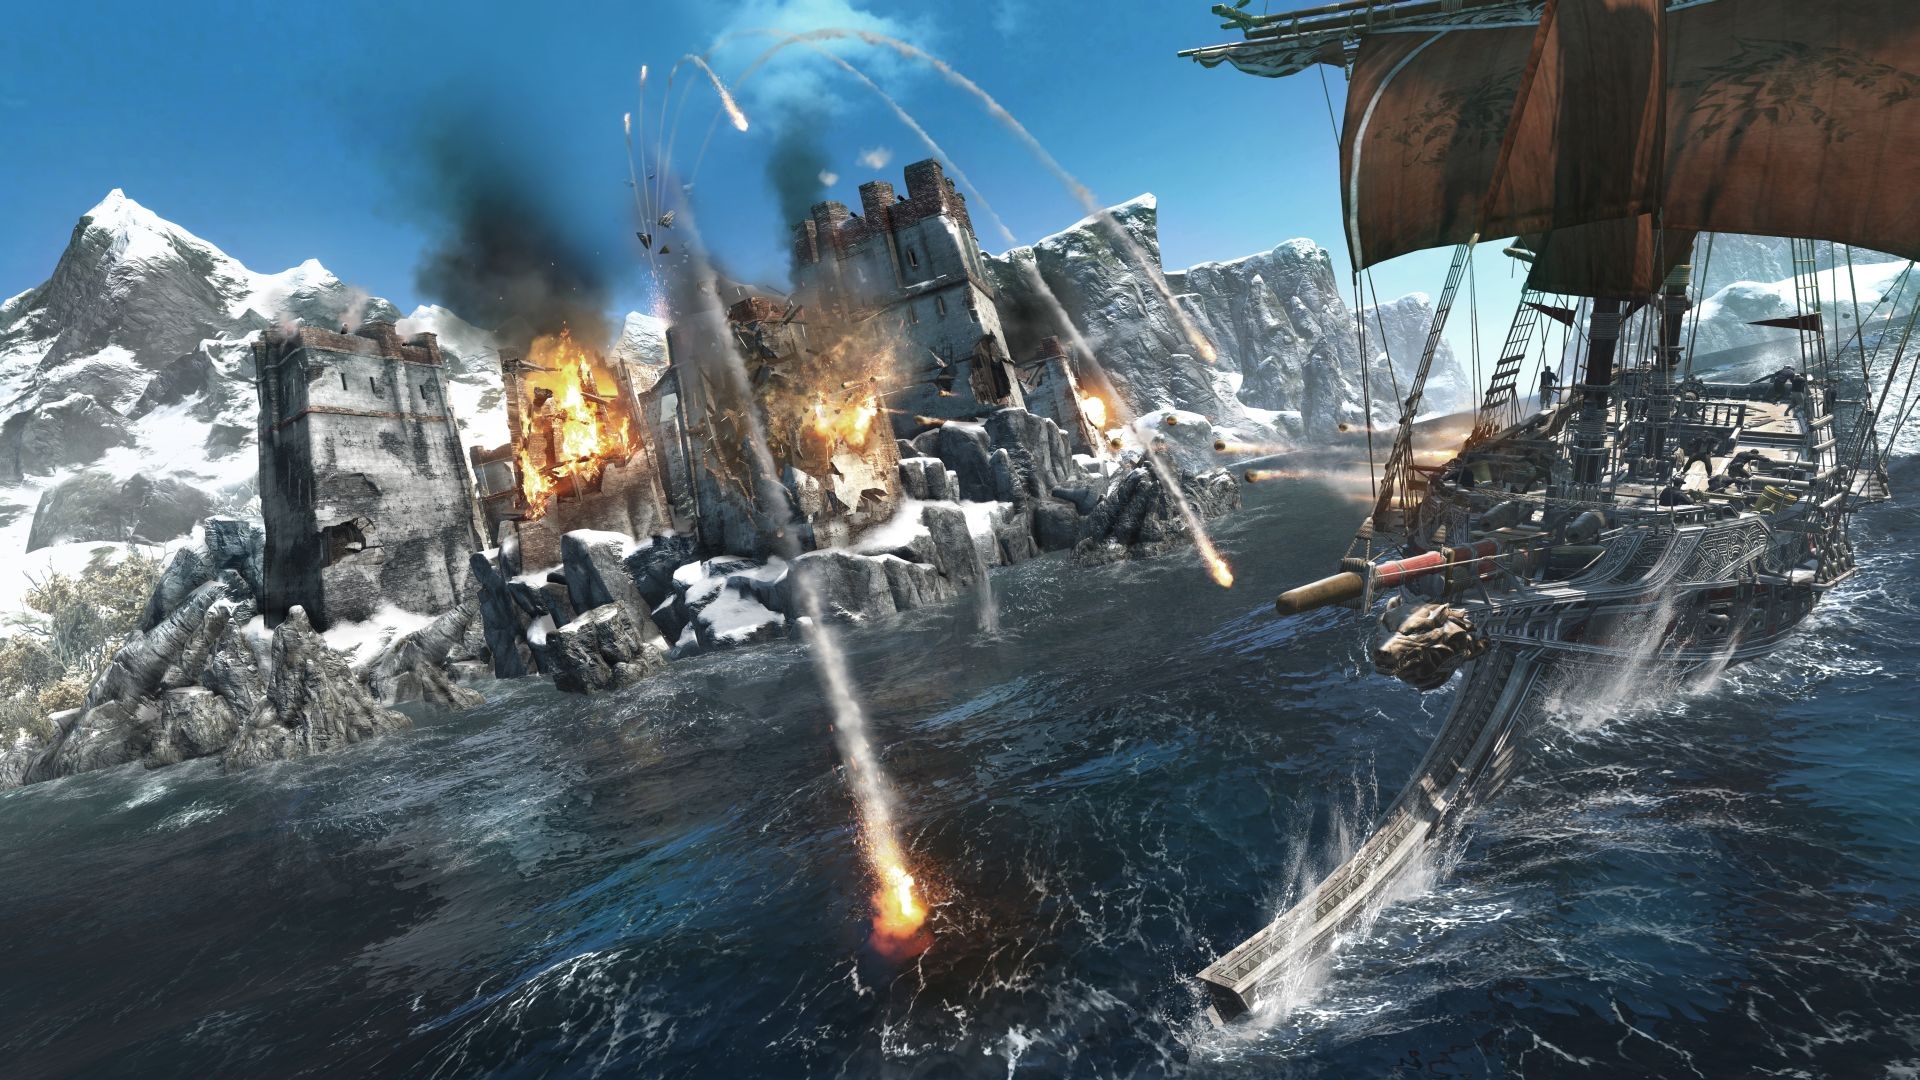 Assassin's Creed: Rogue Ostreovanie pevnost si u iada cvik: muste by neustle v pohybe, inak mte z lode za chvu plku.